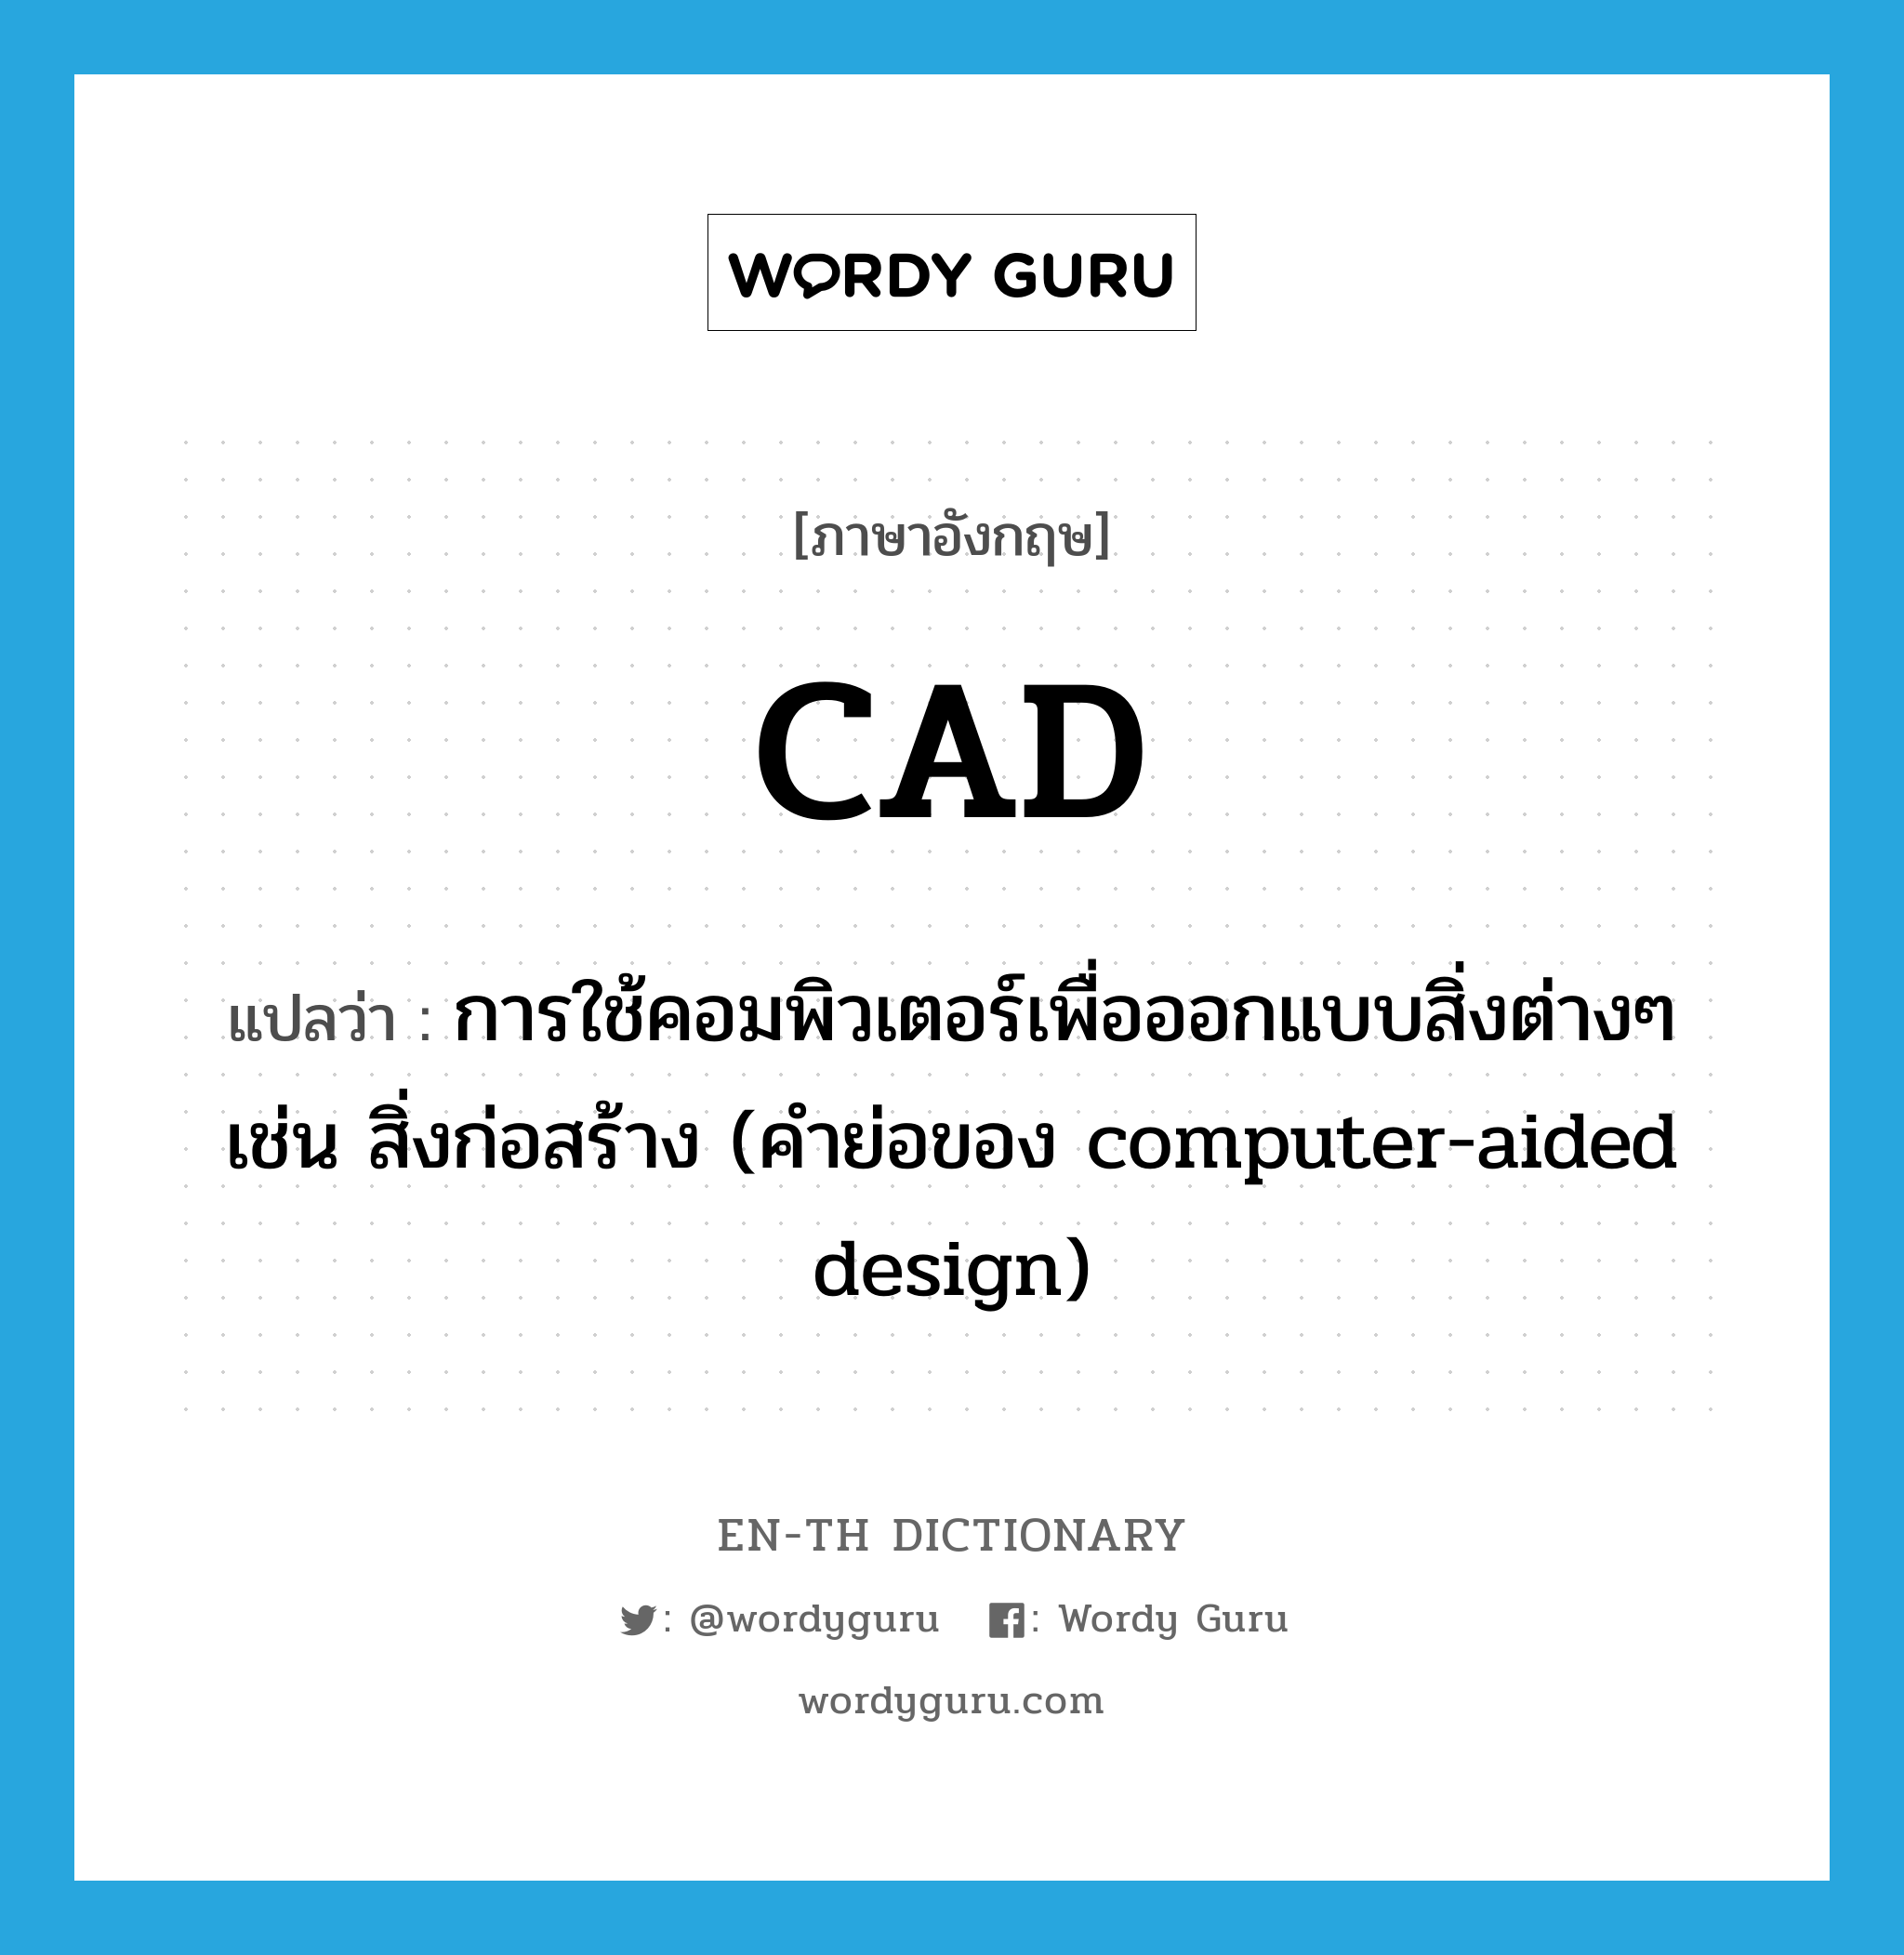 การใช้คอมพิวเตอร์เพื่อออกแบบสิ่งต่างๆ เช่น สิ่งก่อสร้าง (คำย่อของ computer-aided design) ภาษาอังกฤษ?, คำศัพท์ภาษาอังกฤษ การใช้คอมพิวเตอร์เพื่อออกแบบสิ่งต่างๆ เช่น สิ่งก่อสร้าง (คำย่อของ computer-aided design) แปลว่า CAD ประเภท ABBR หมวด ABBR